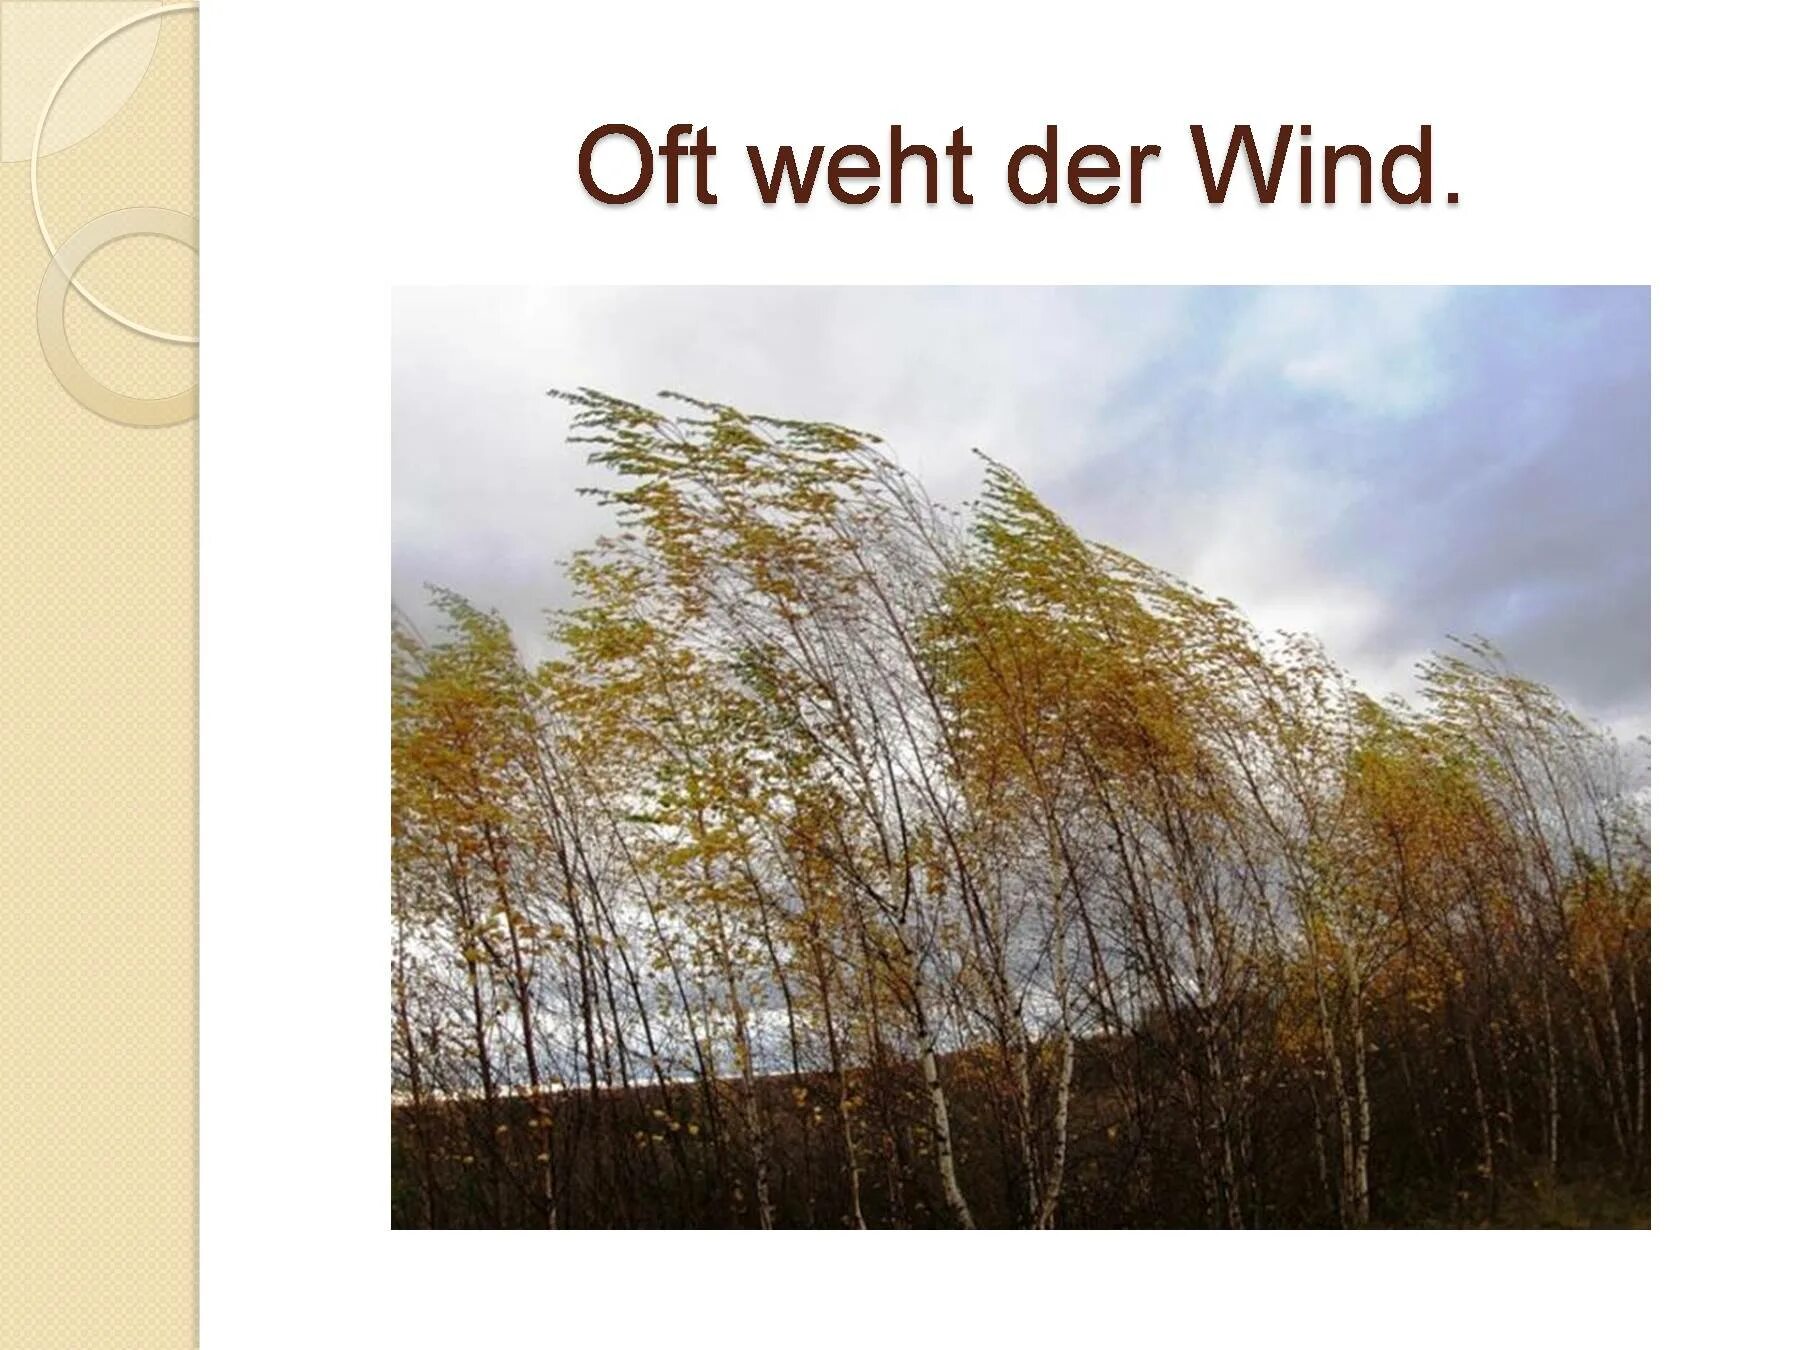 Сильный ветер осень. Сильный ветер осенью. Осень дует сильный ветер. Ветер верхушки деревьев. Где дуют сильные ветры